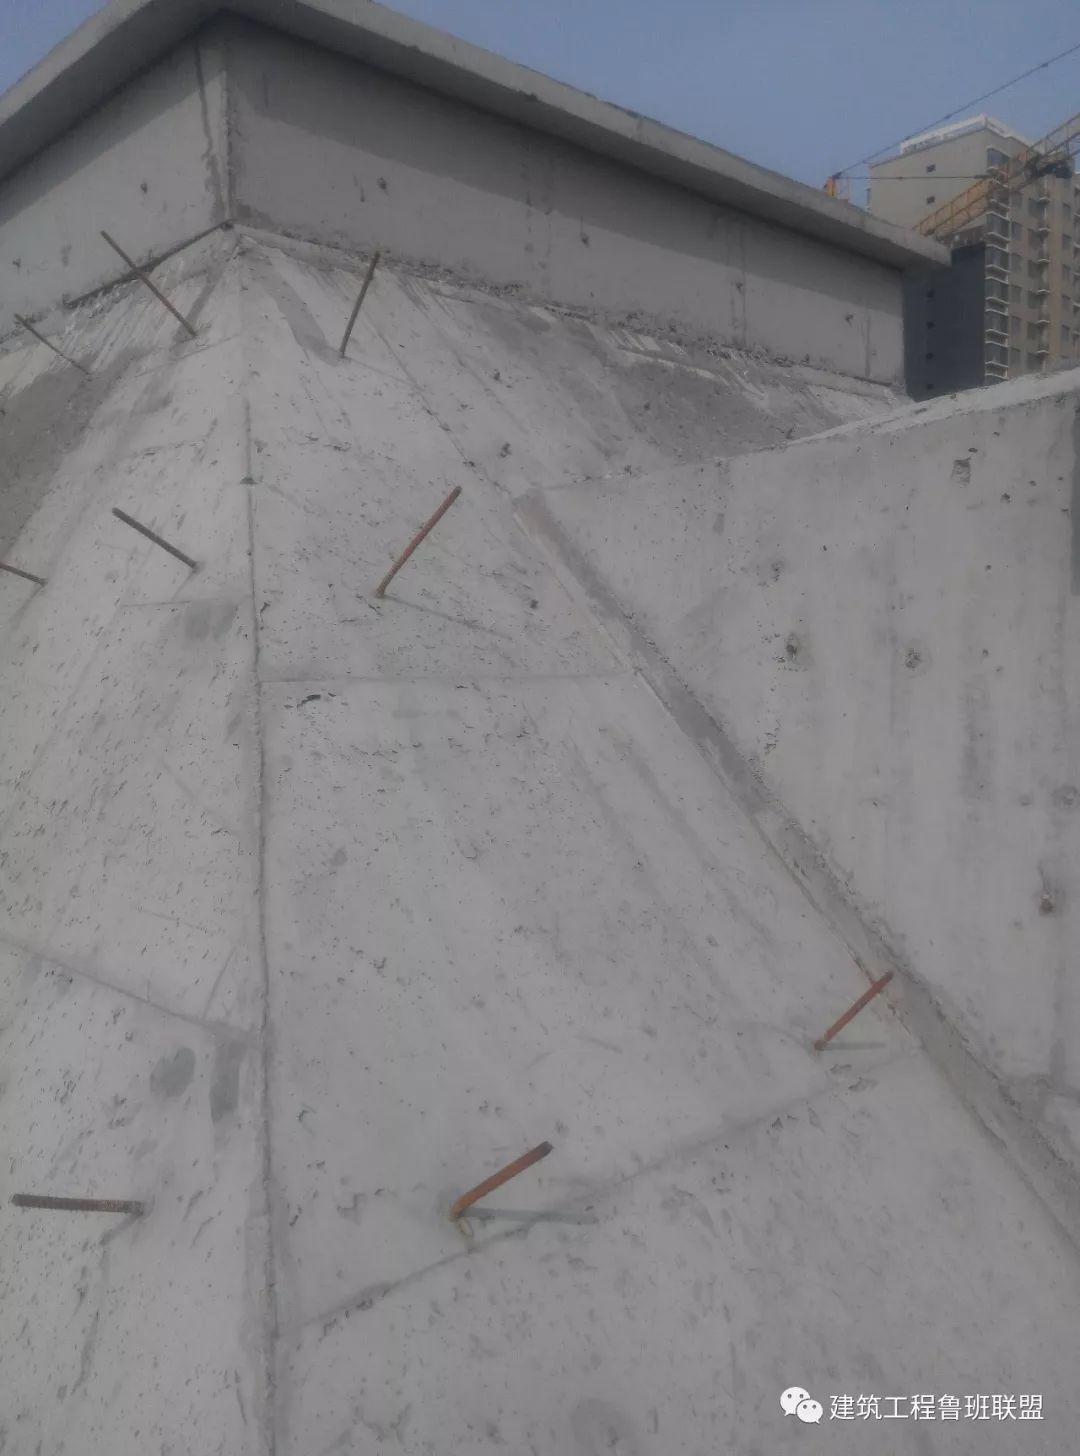 双面模板 自密实混凝土:提高大坡度斜屋面混凝土成型质量